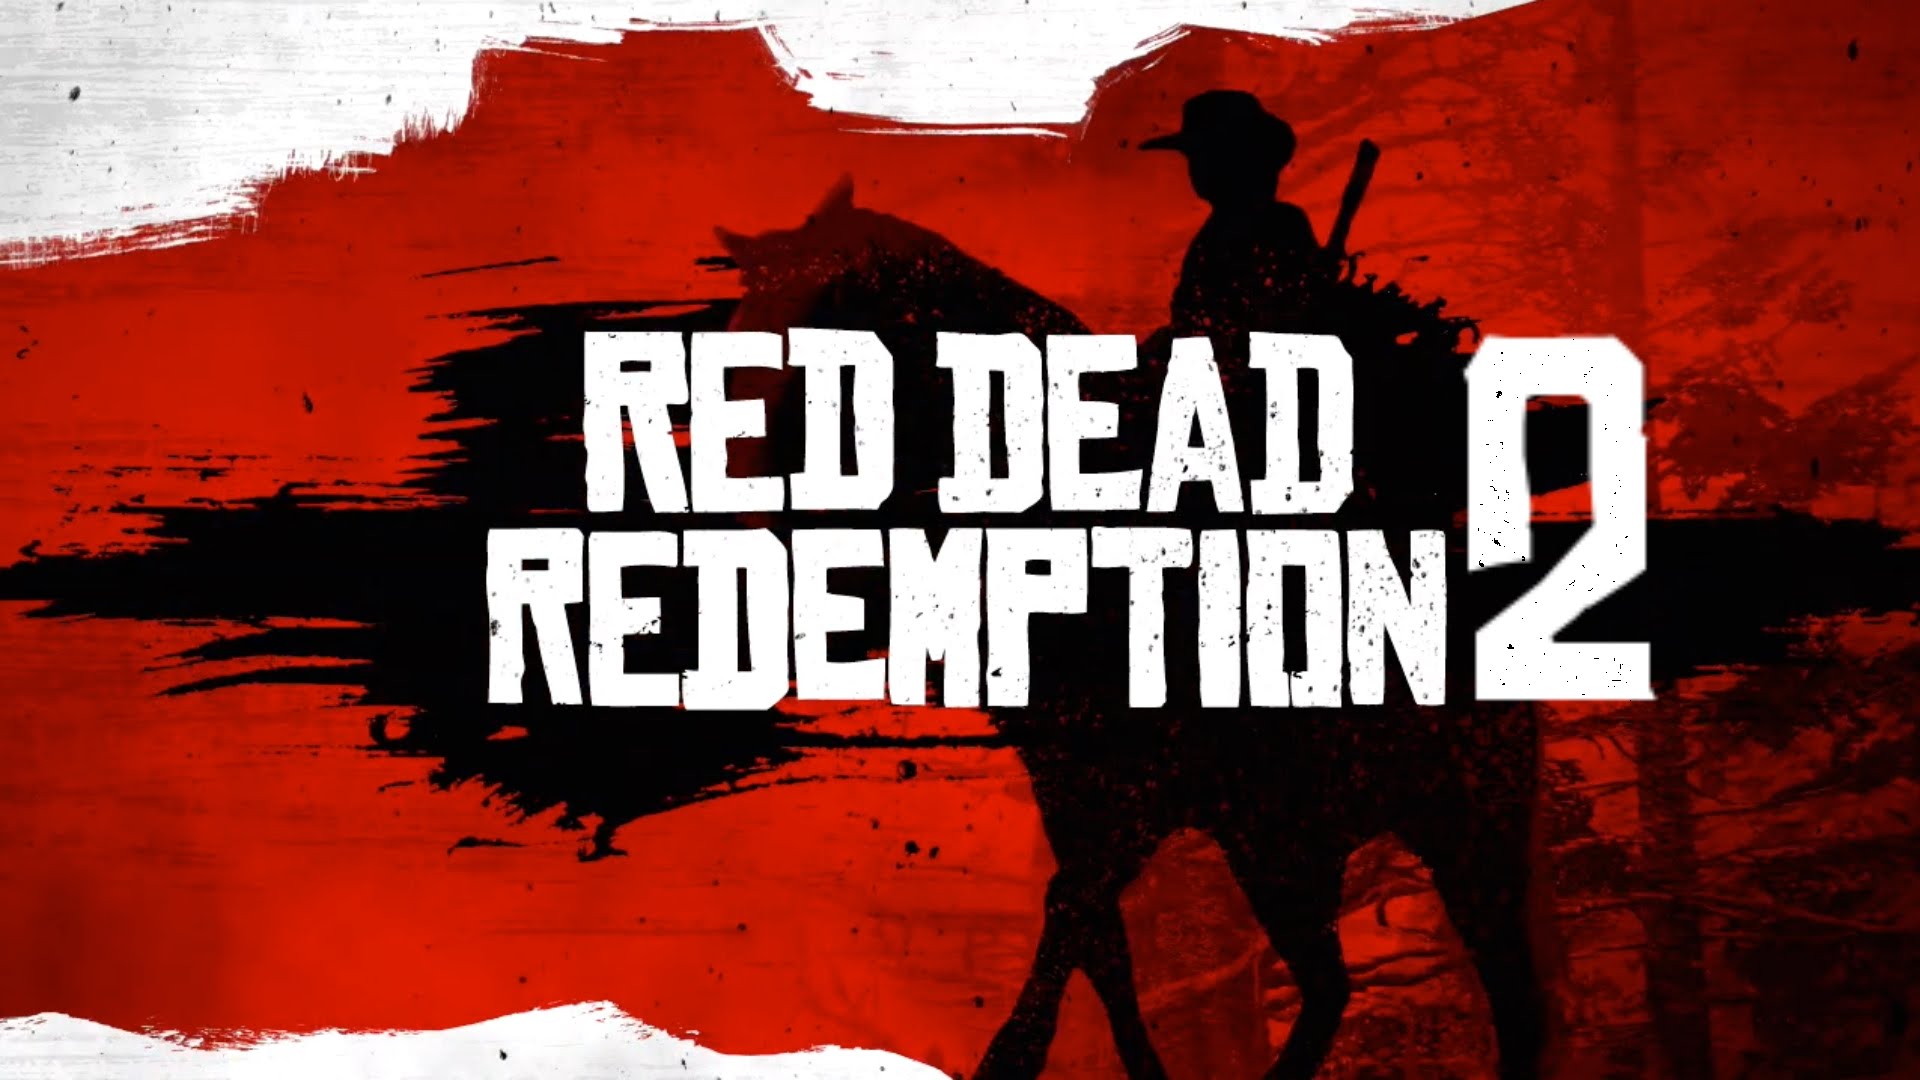 Possibile leak della versione PC di Red Dead Redemption 2